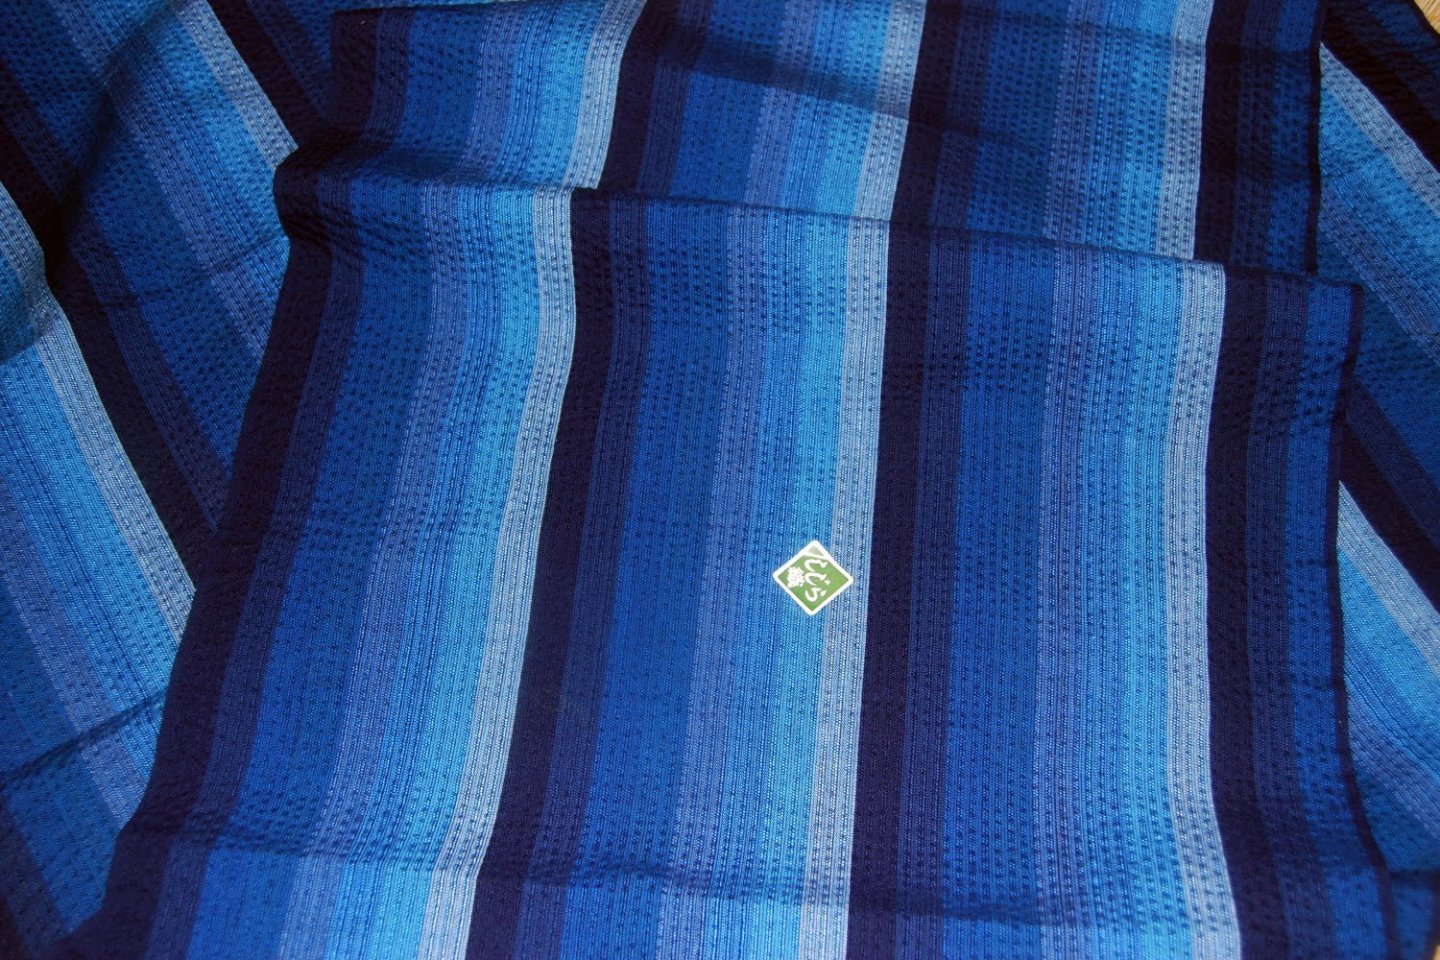 Awa-shijira cloth, Tokushima prefecture